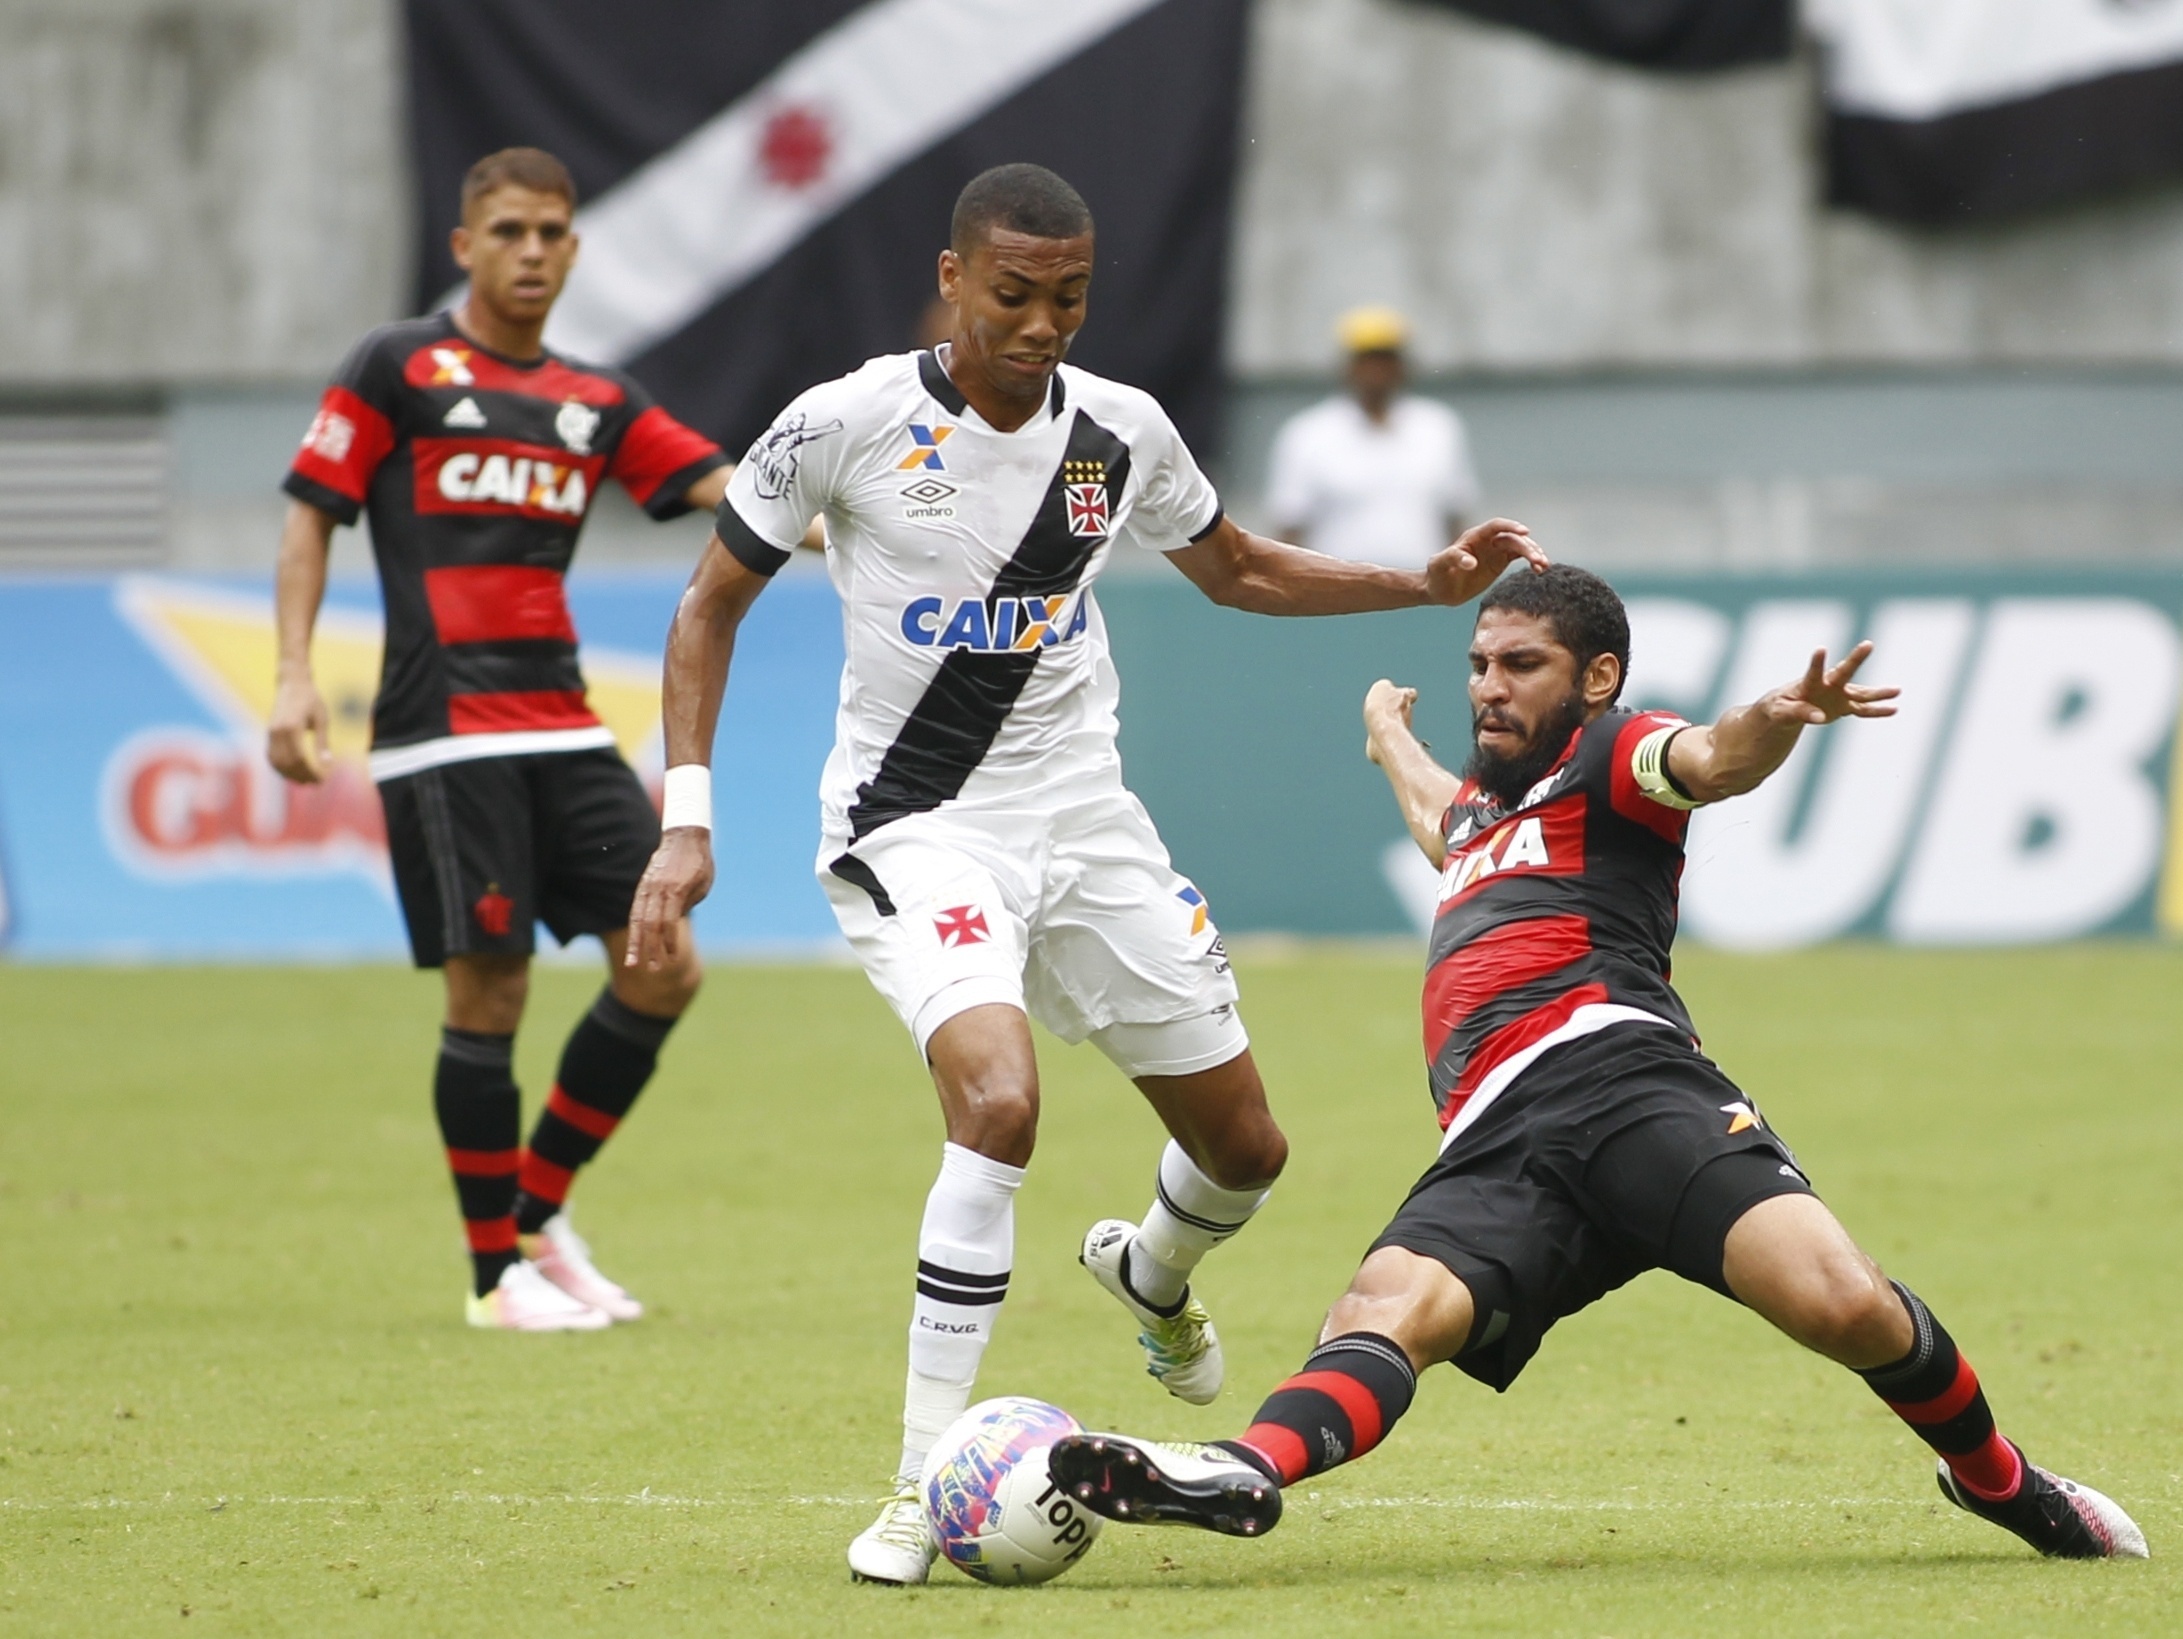 Campeão mundial pelo Flamengo minimiza classificação sobre o Vasco